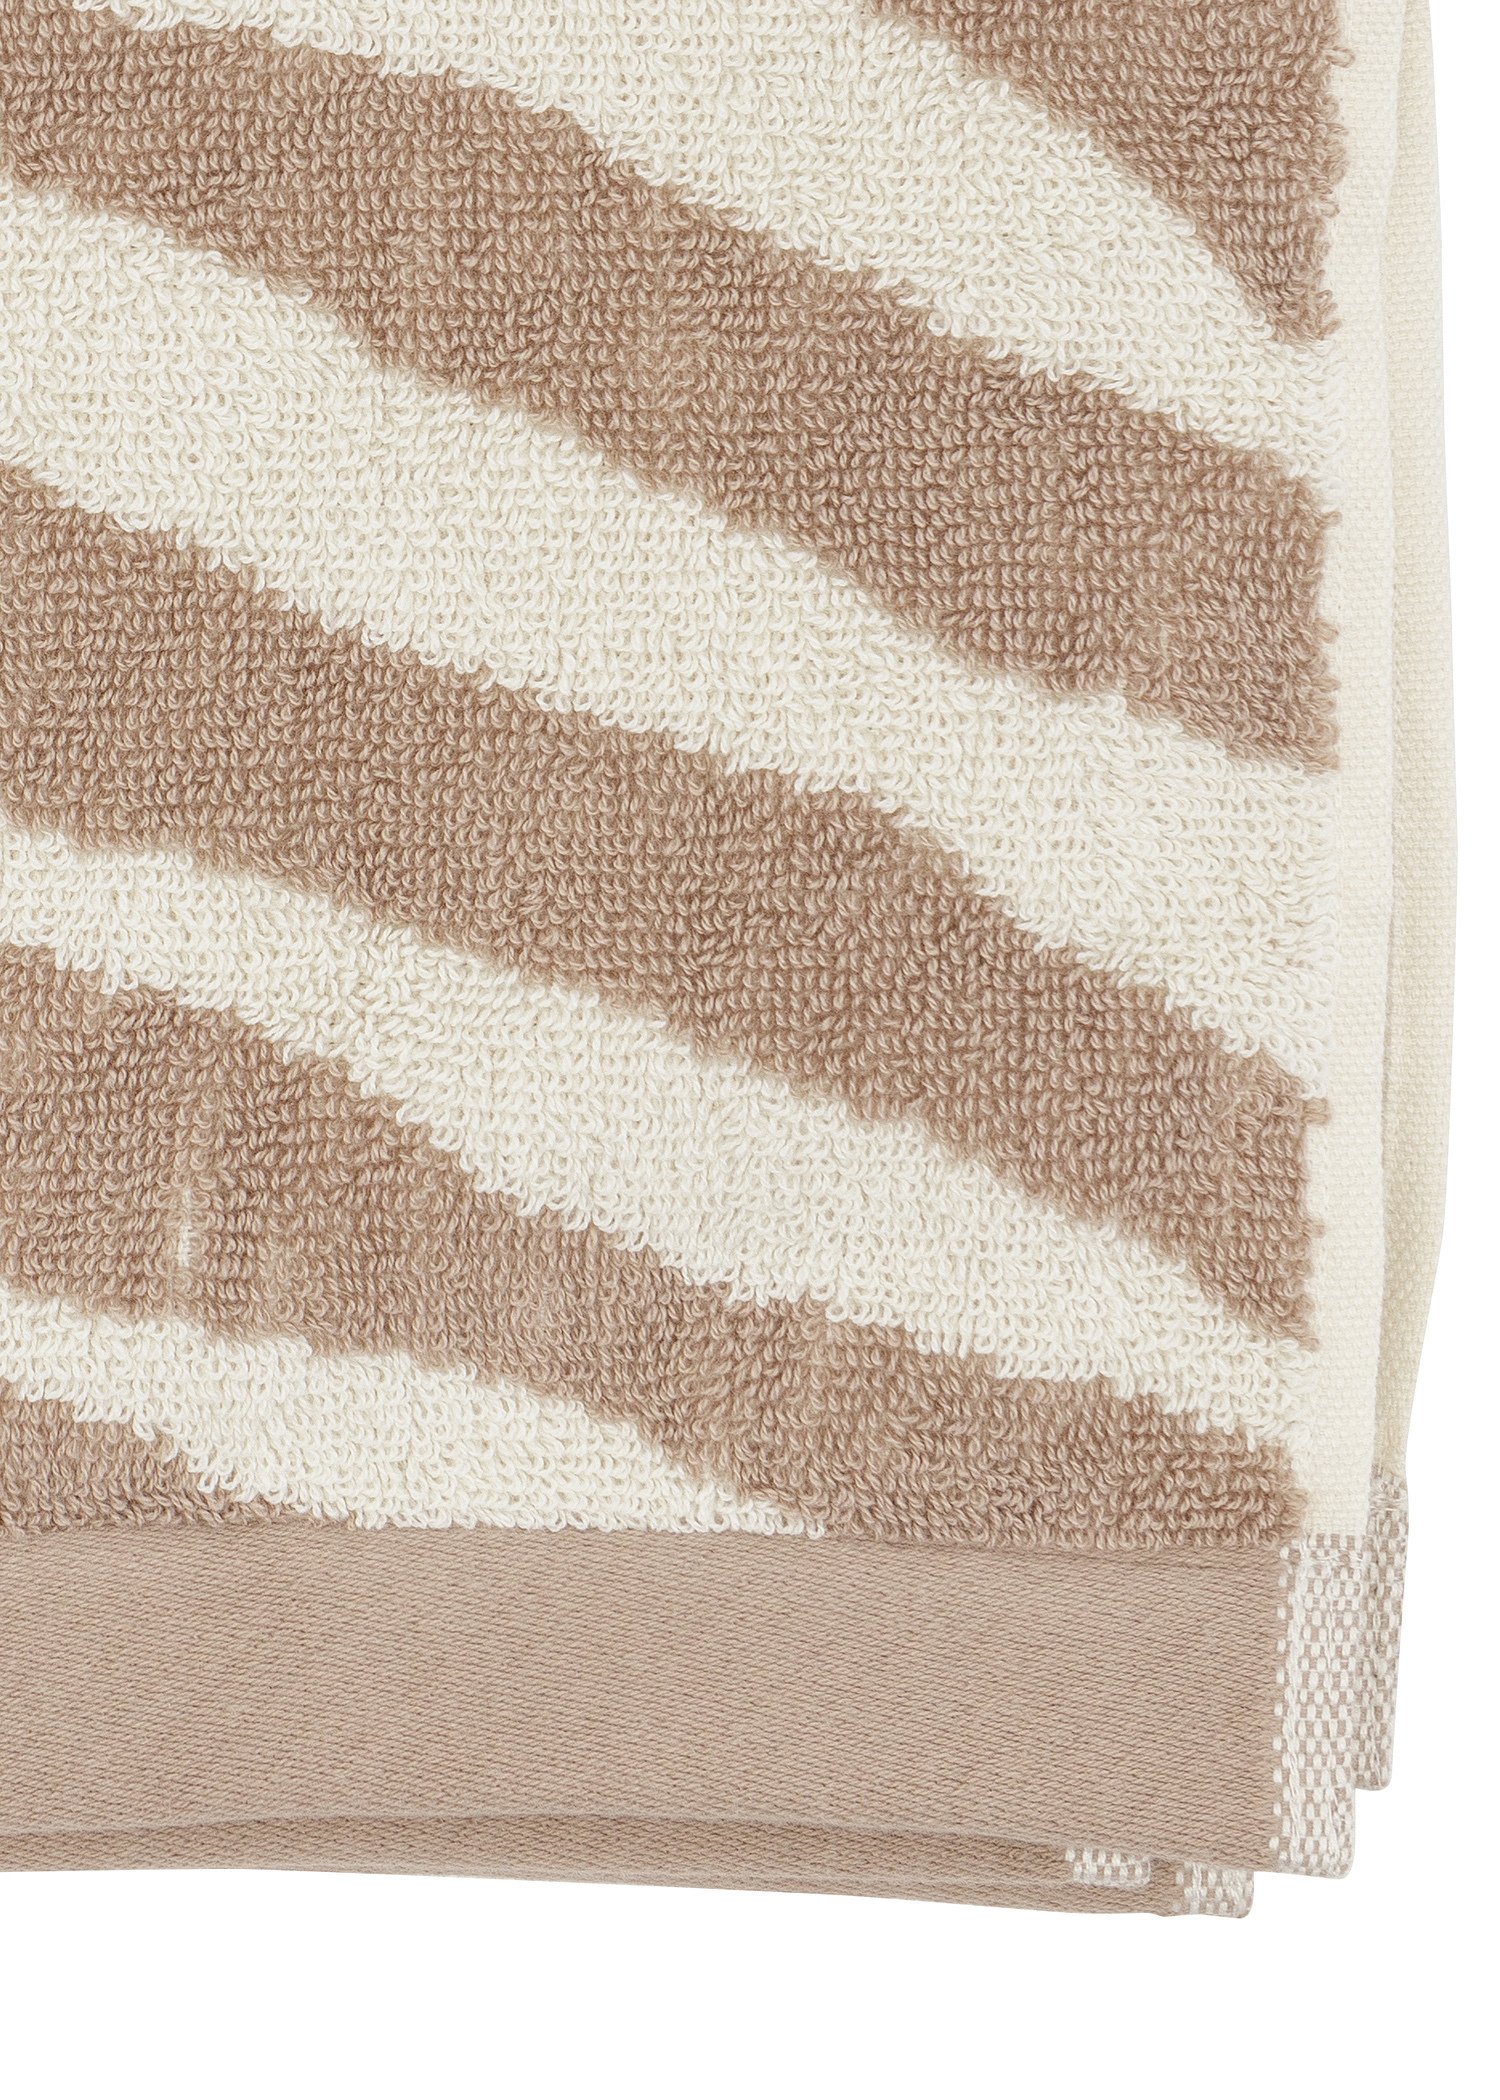 Zebra patterned towel Image 5